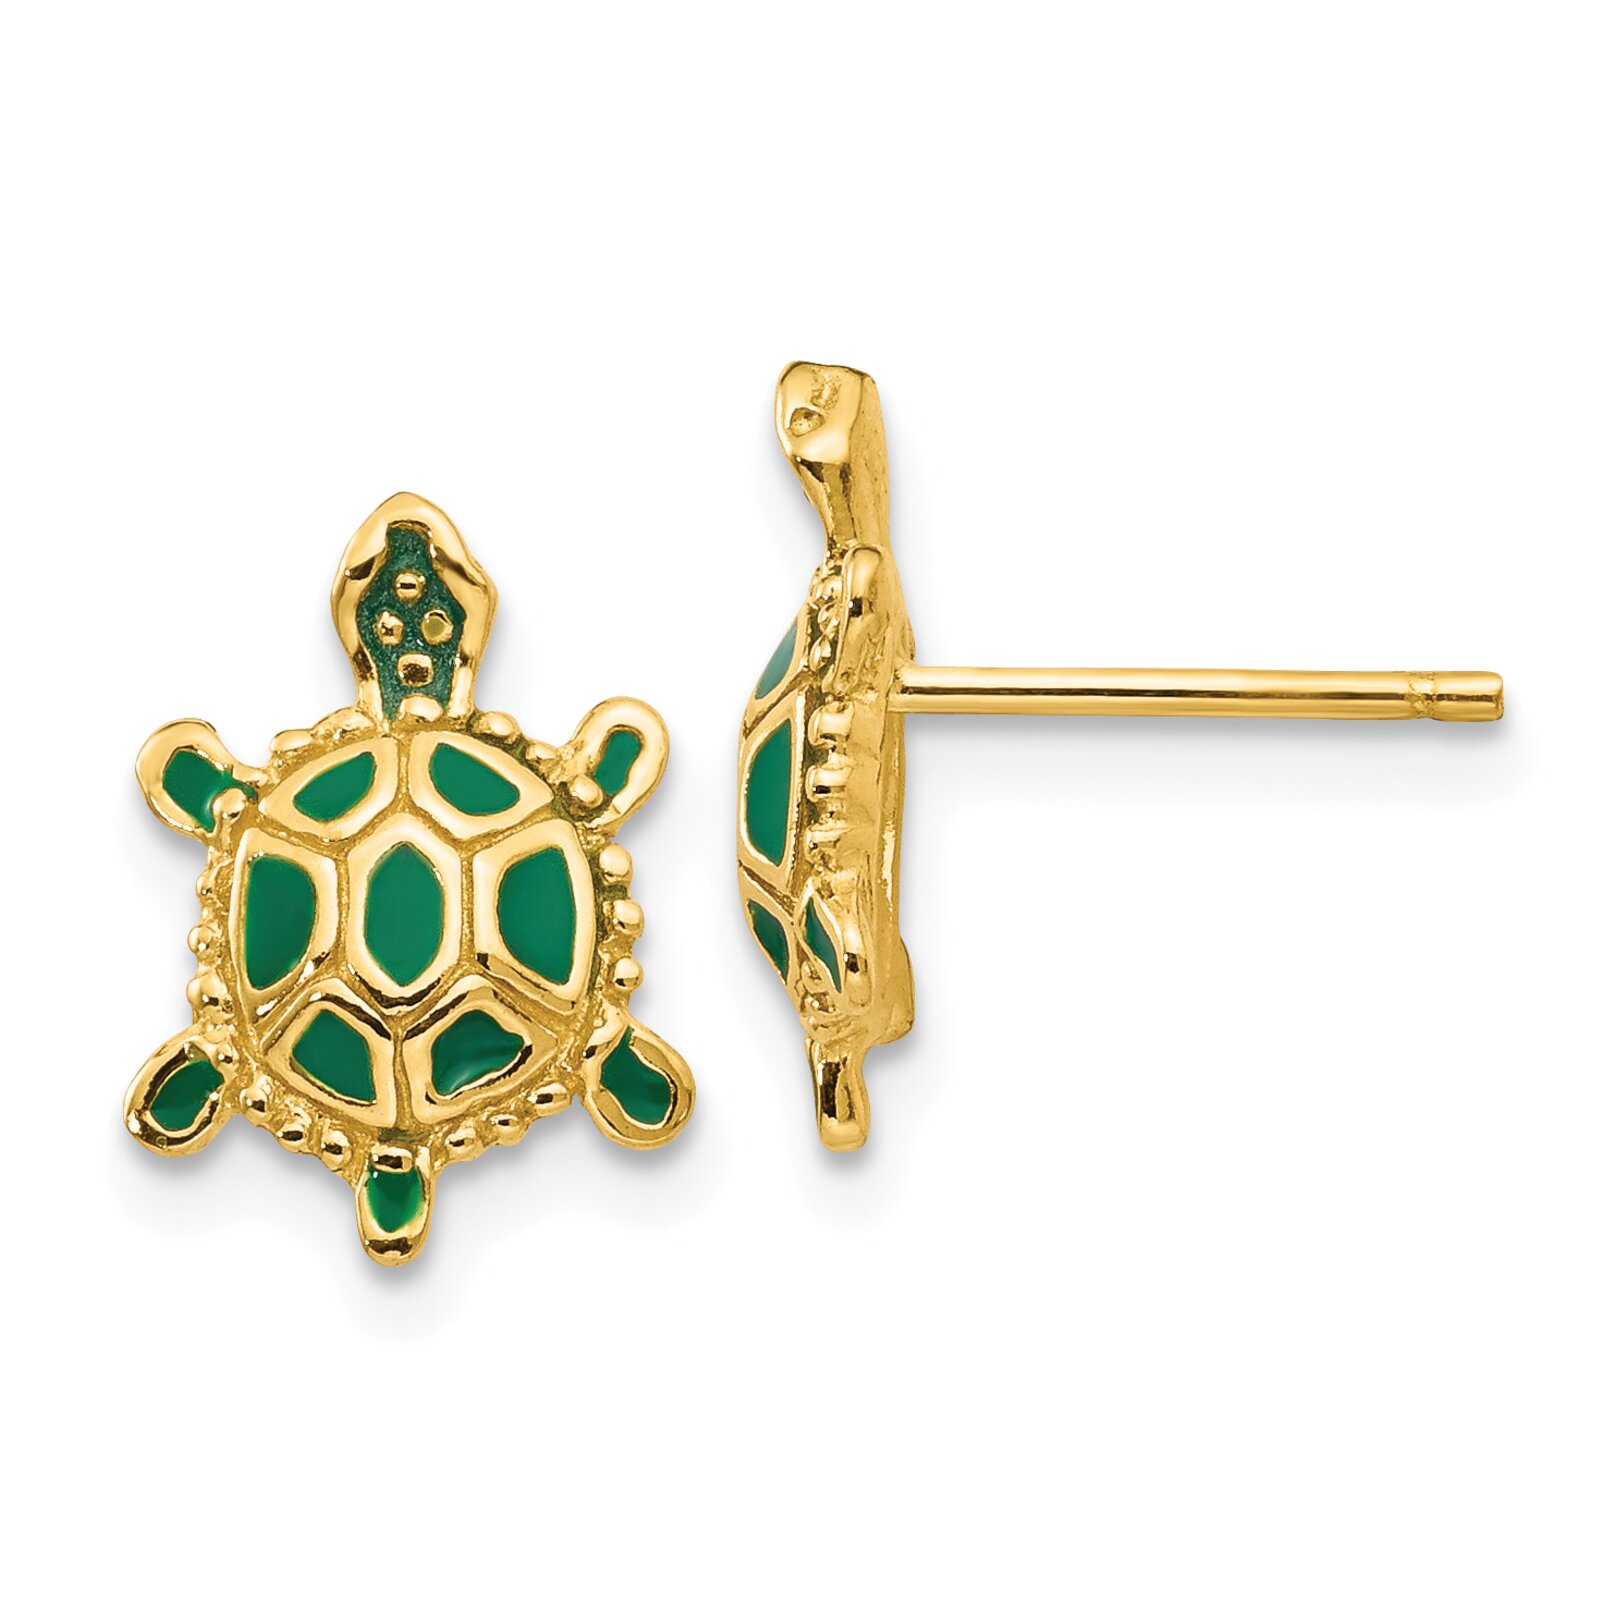 Findingking 14K Gold Green Enameled Turtle Stud Earrings Jewelry